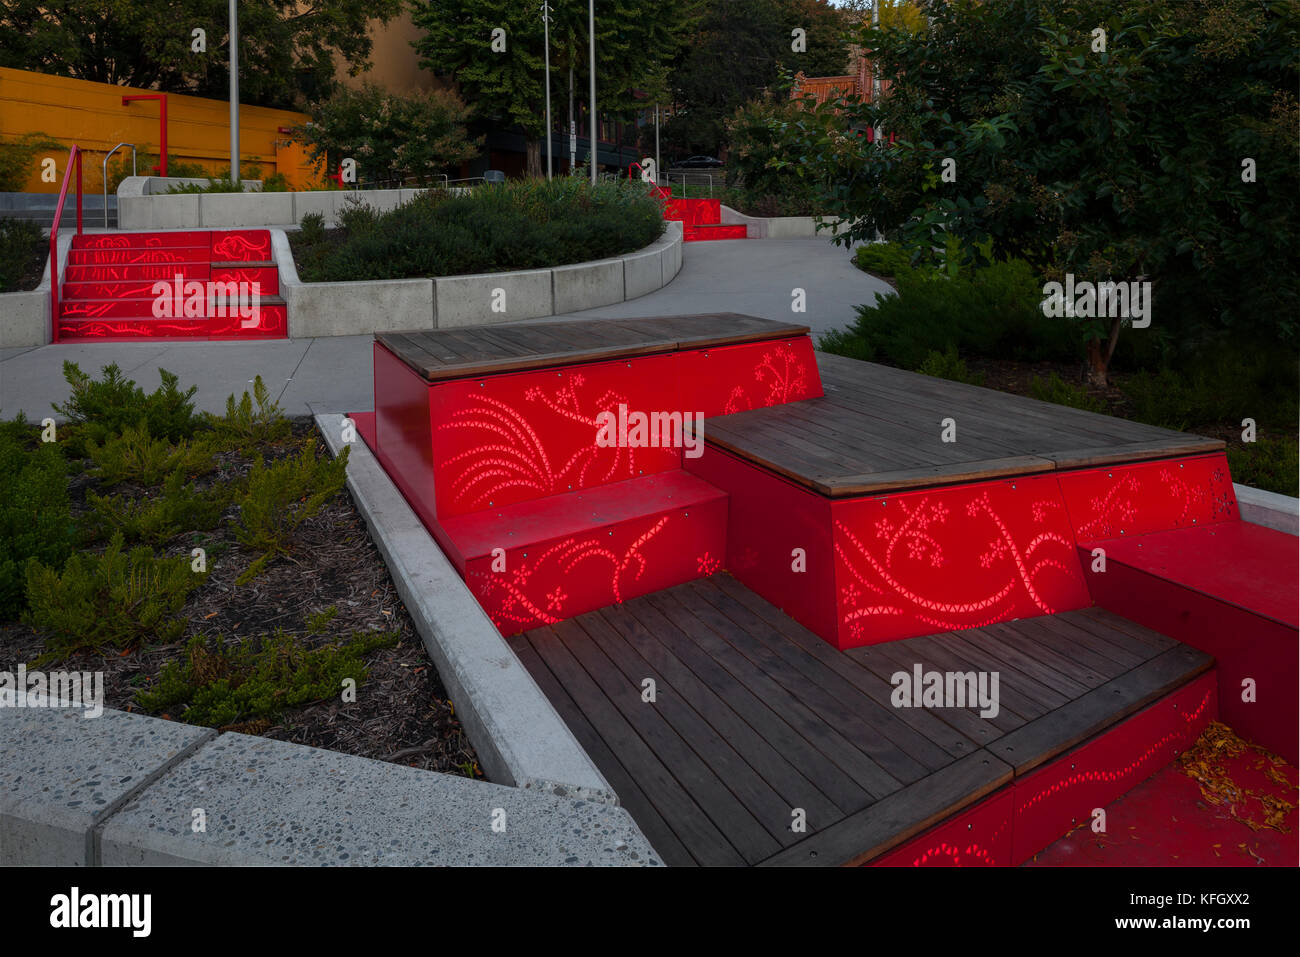 WA14158-00...WASHINGTON - i gradini con i simboli zodiacali cinesi illuminano i passaggi pedonali di Hing Hay Park nel quartiere internazionale di Seattles. Foto Stock